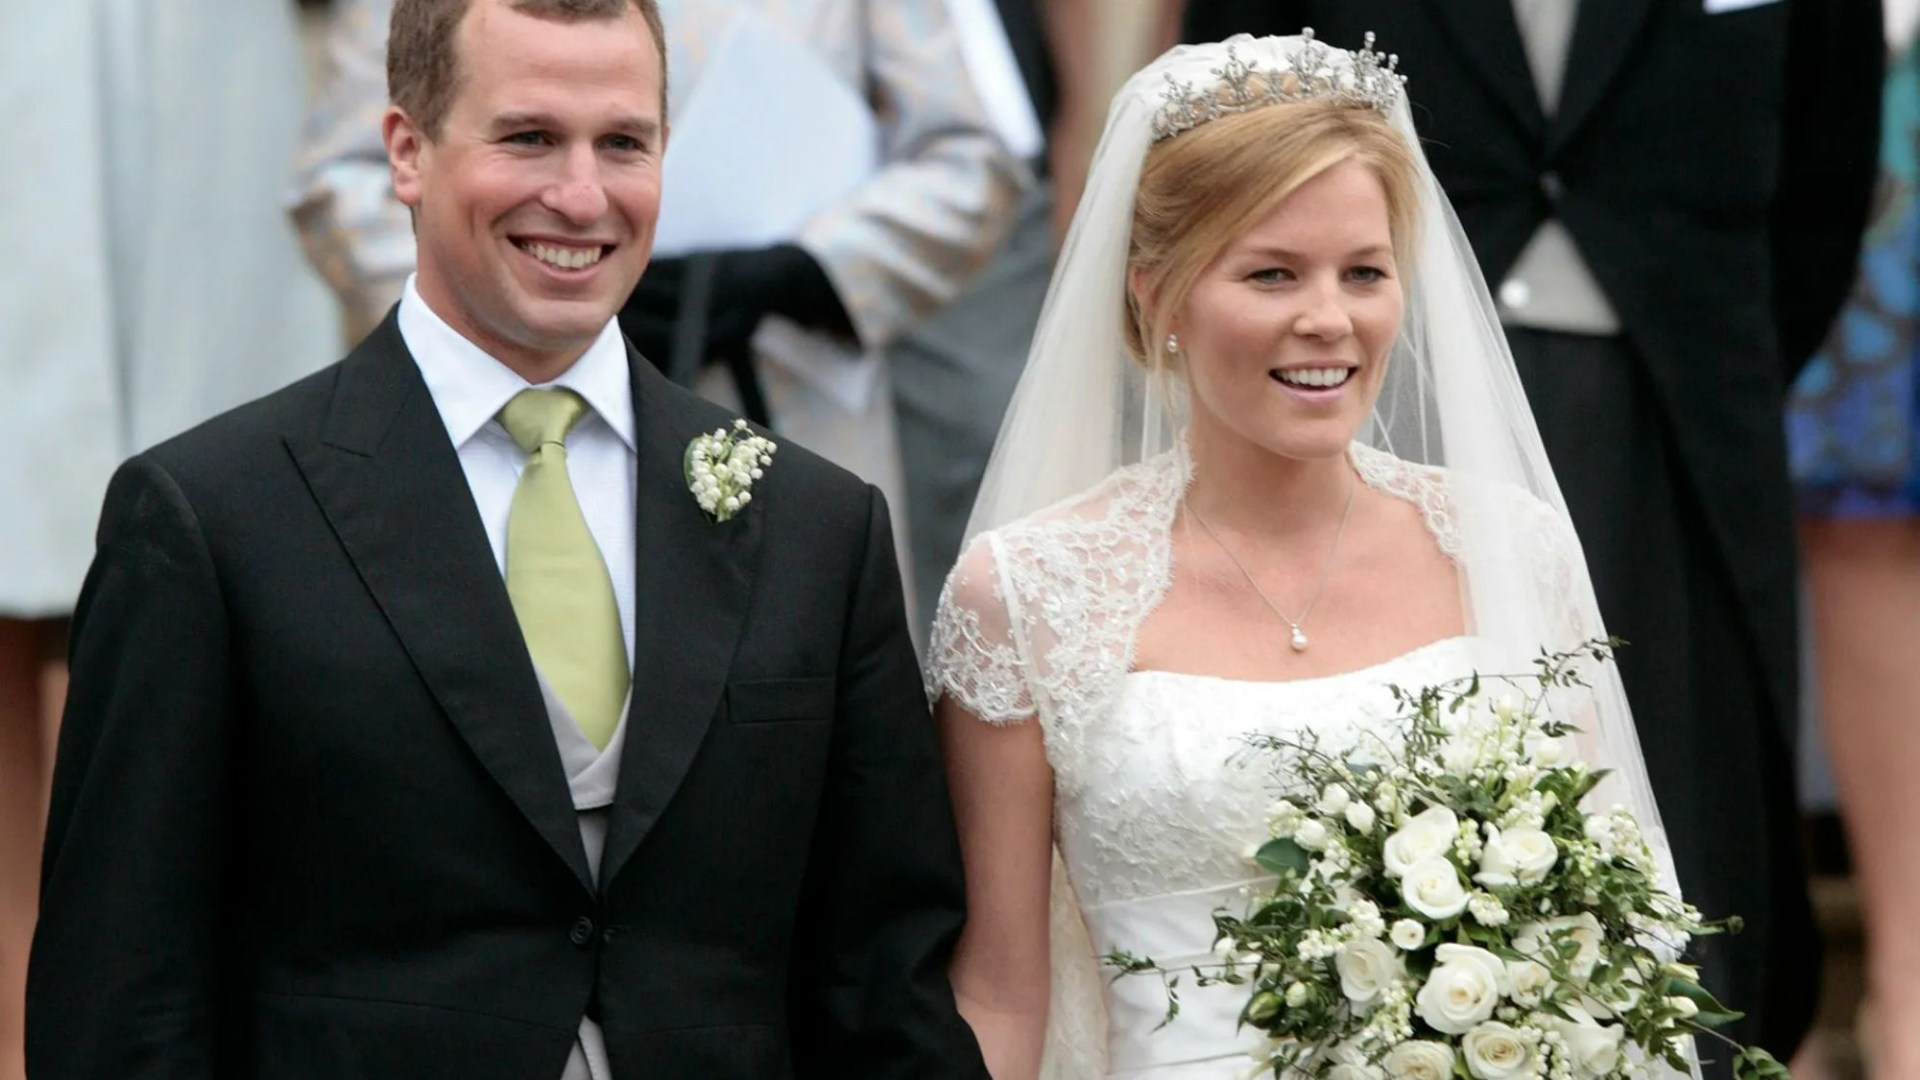 Peter Phillips' £500k wedding gift revealed – while sister Zara turned down similar £1m offer